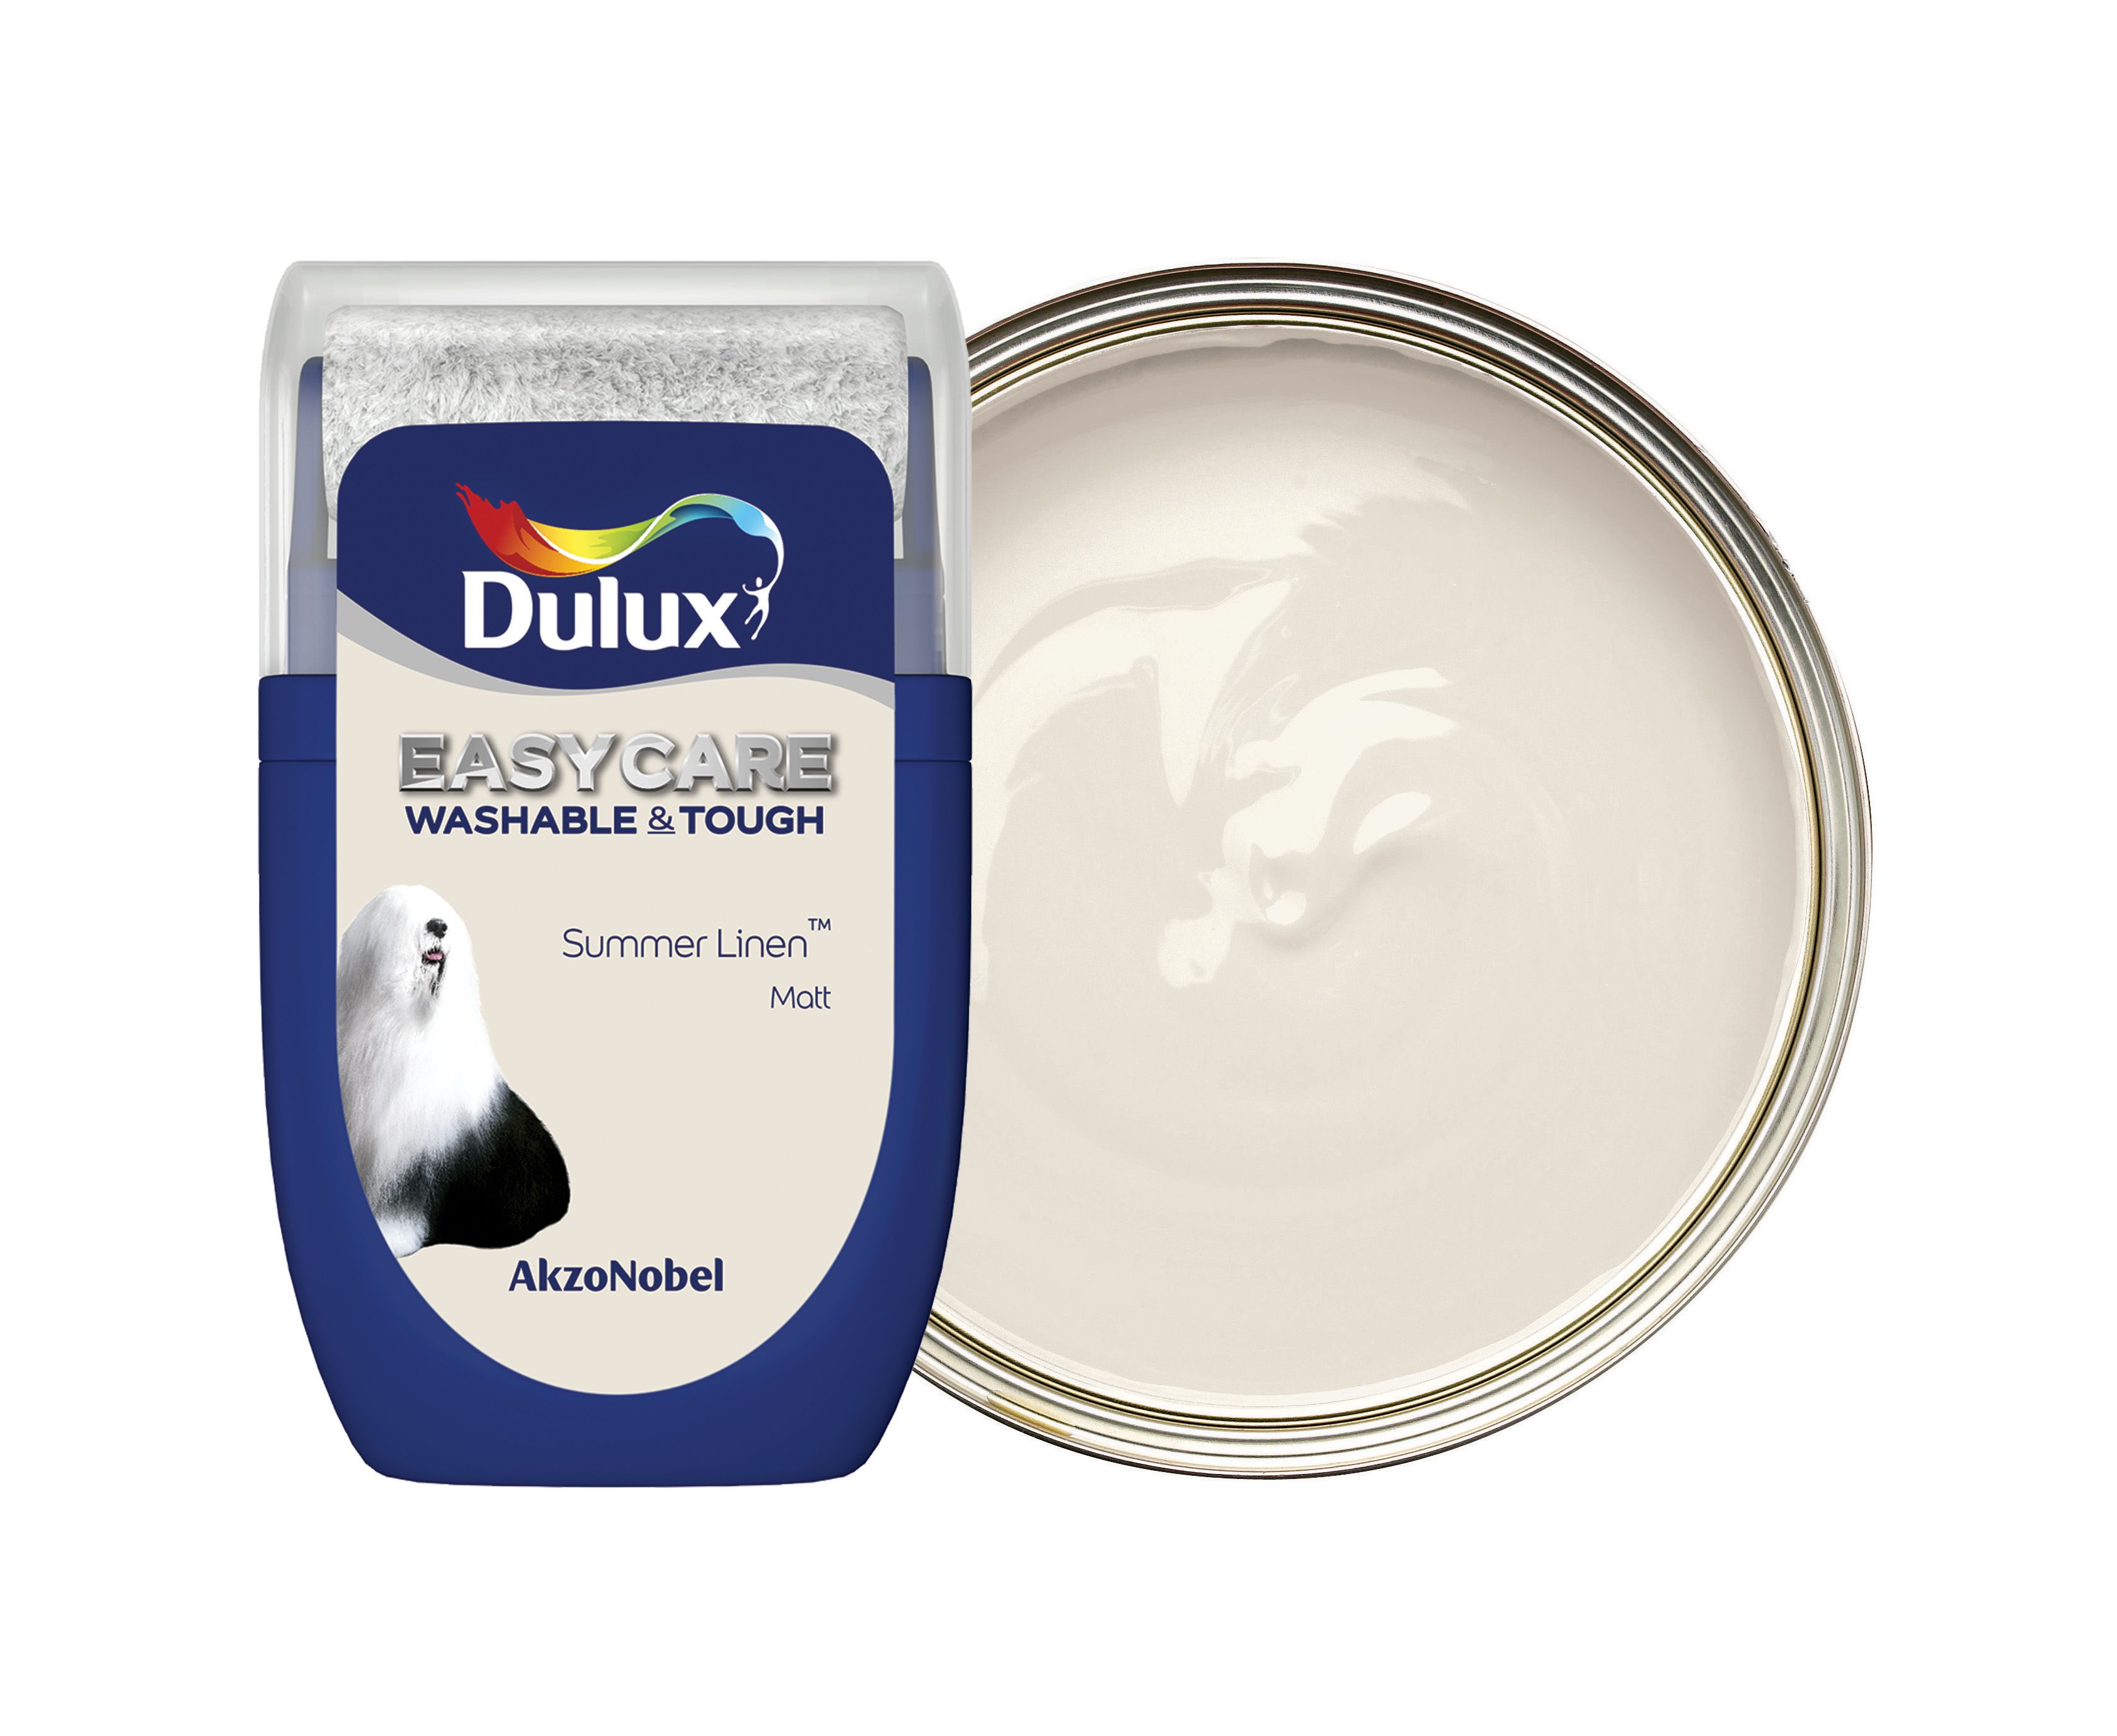 Dulux Easycare Washable & Tough Paint Tester Pot - Summer Linen - 30ml